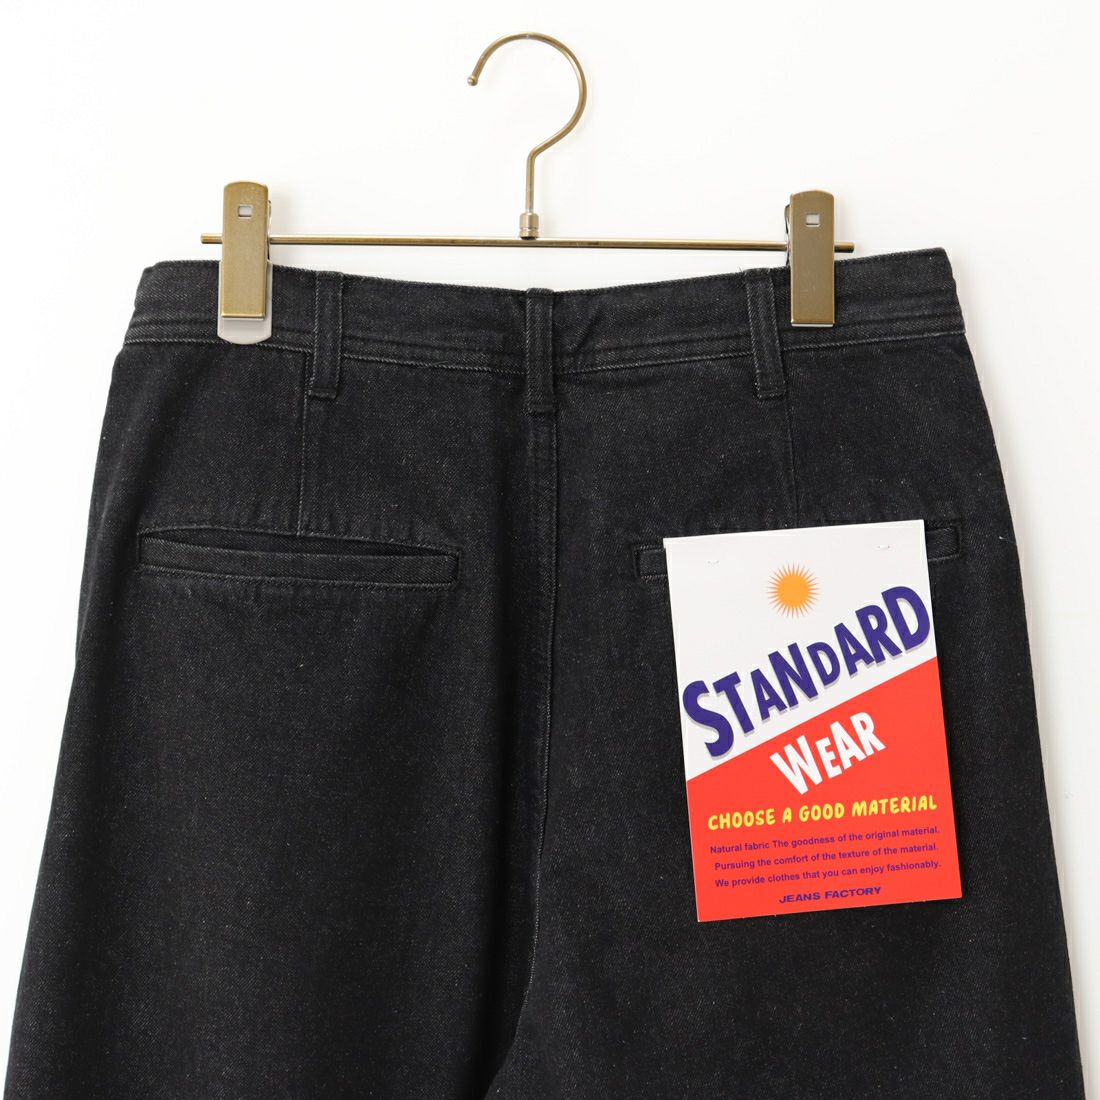 Jeans Factory Clothes [ジーンズファクトリークローズ] 2タックデニムワイドパンツ [JFC-224-052] BLACK USED